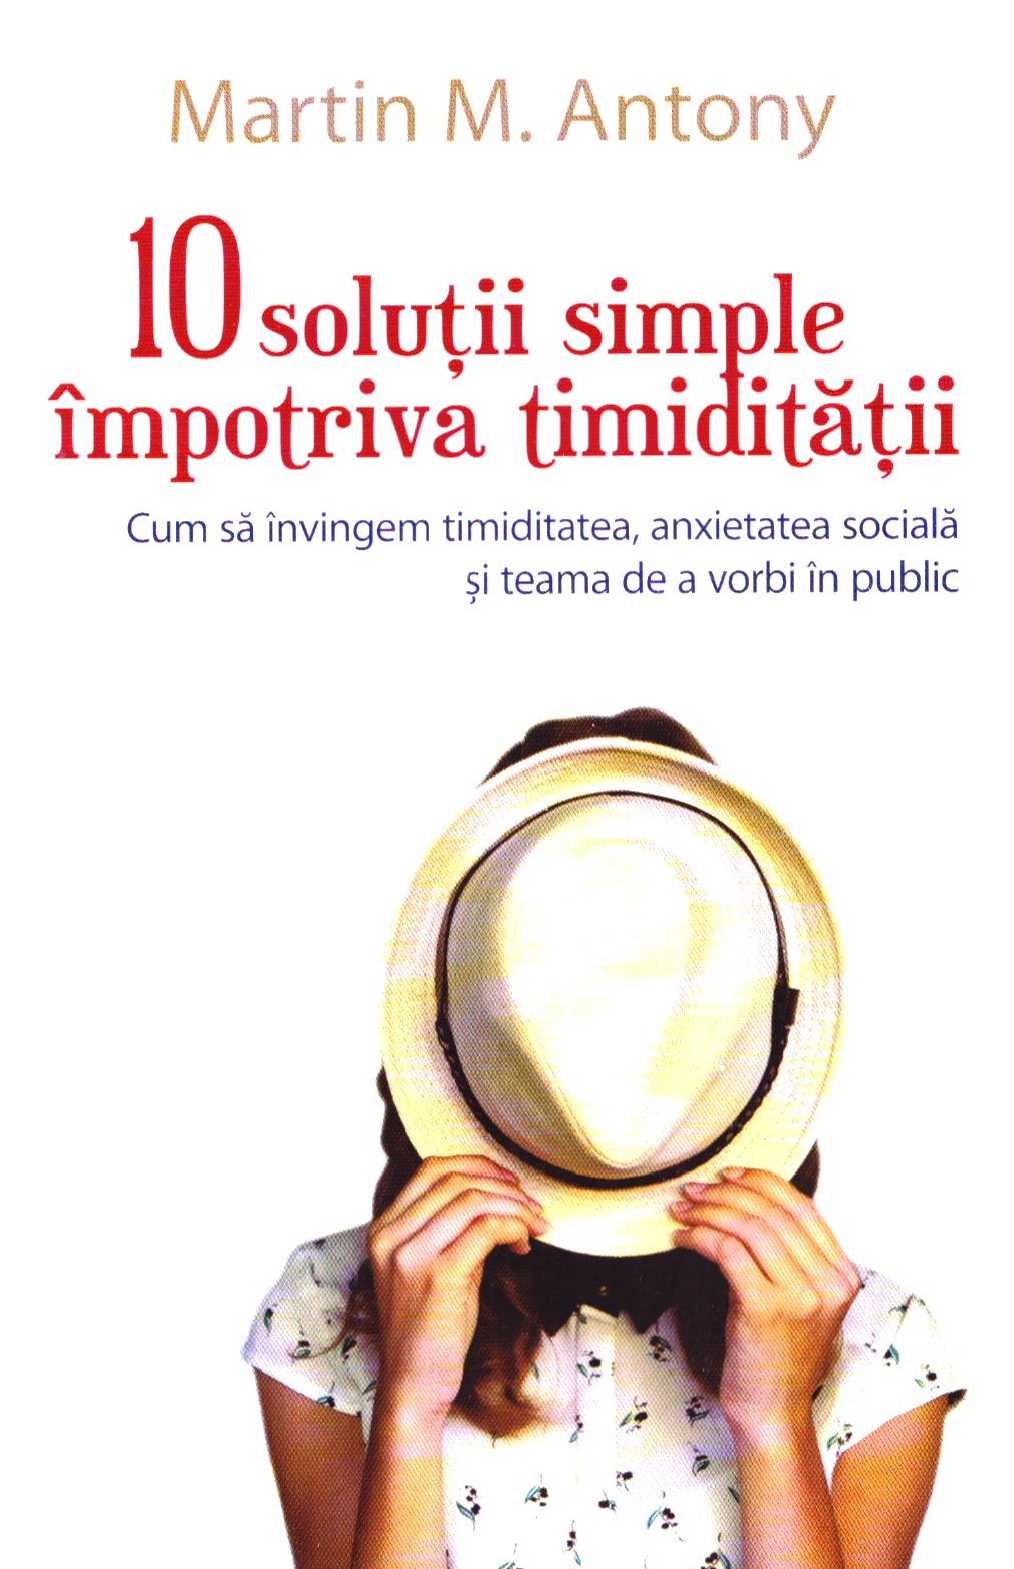 10 solutii simple impotriva timiditatii - Martin M. Antony 